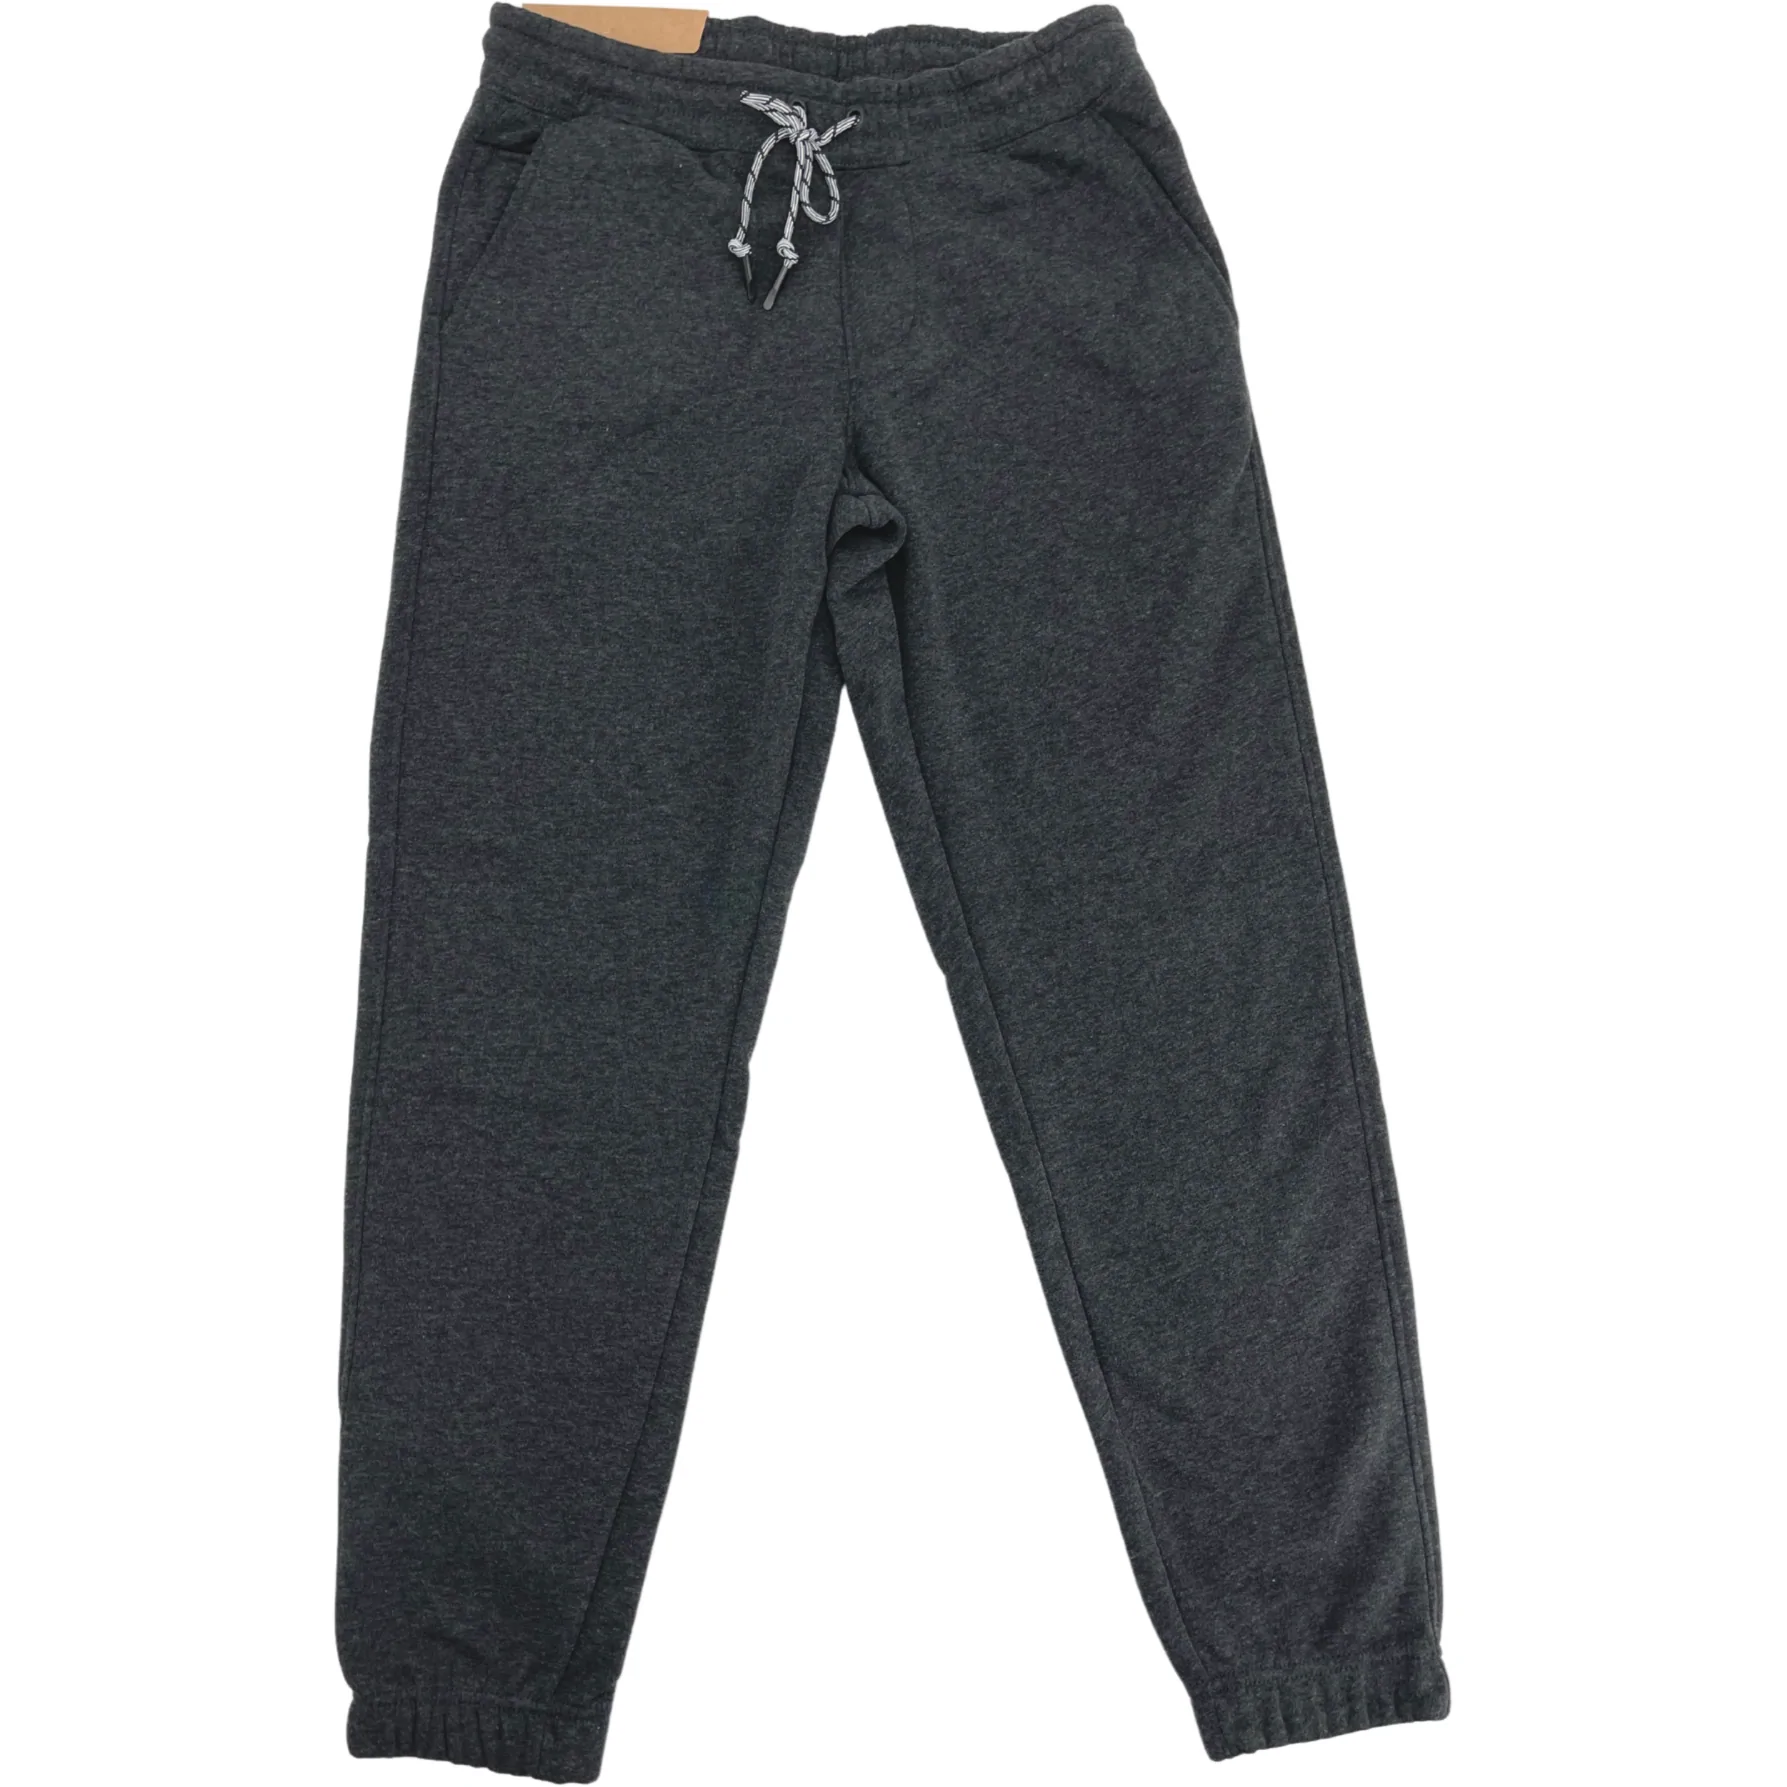 Weatherproof Men's Sweatpants / Rimrock Jogger / Fleece Lined